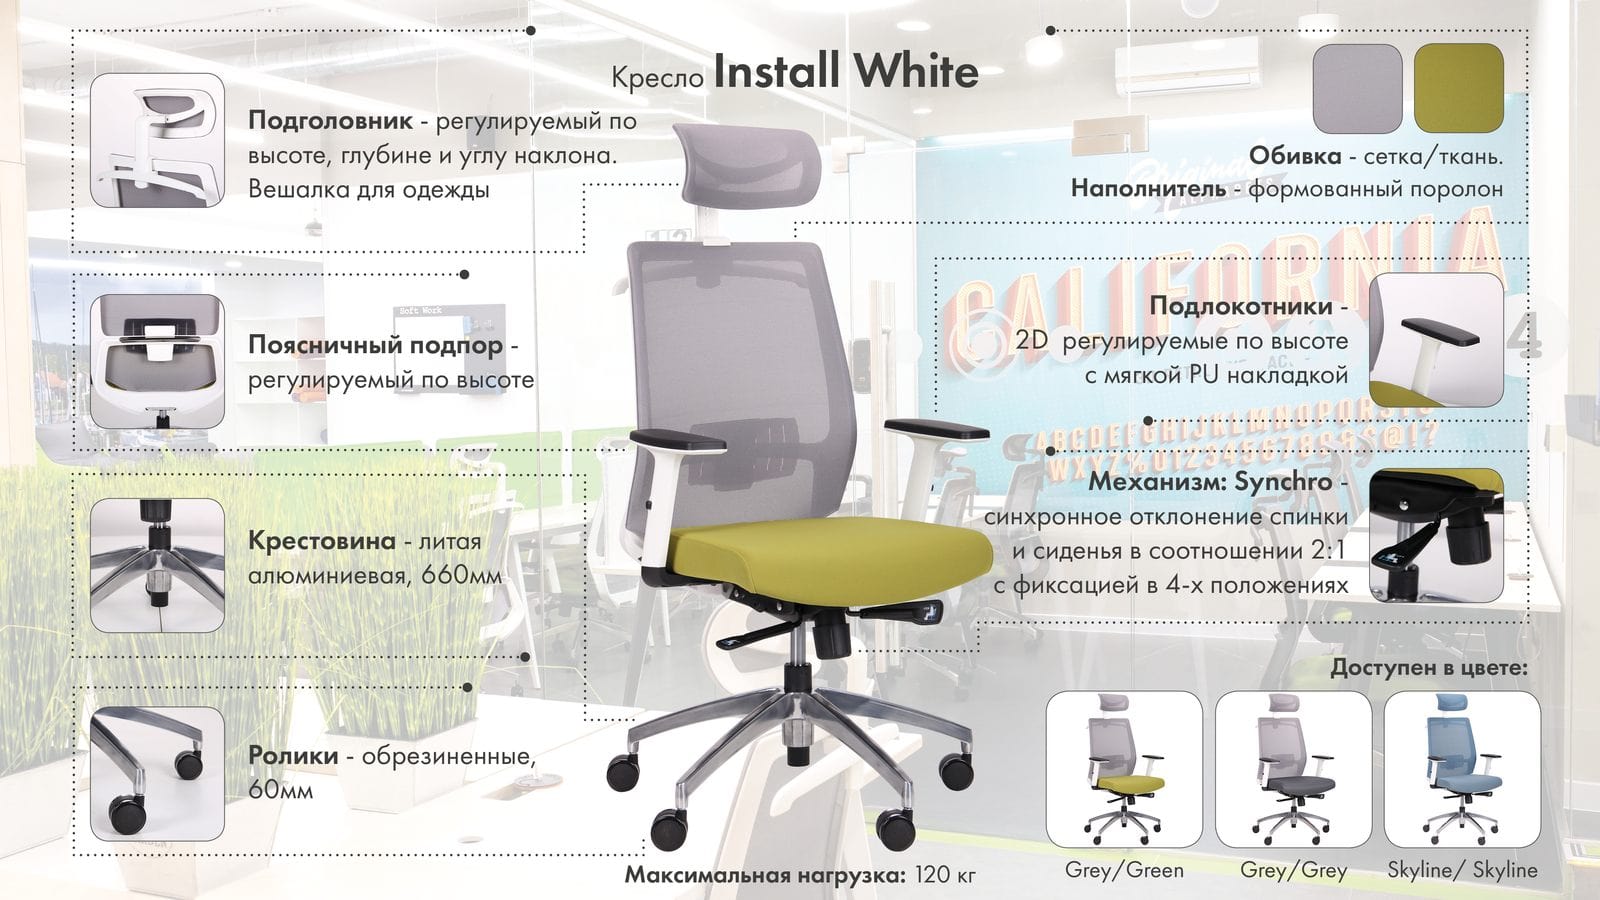 Кресло Install White описание